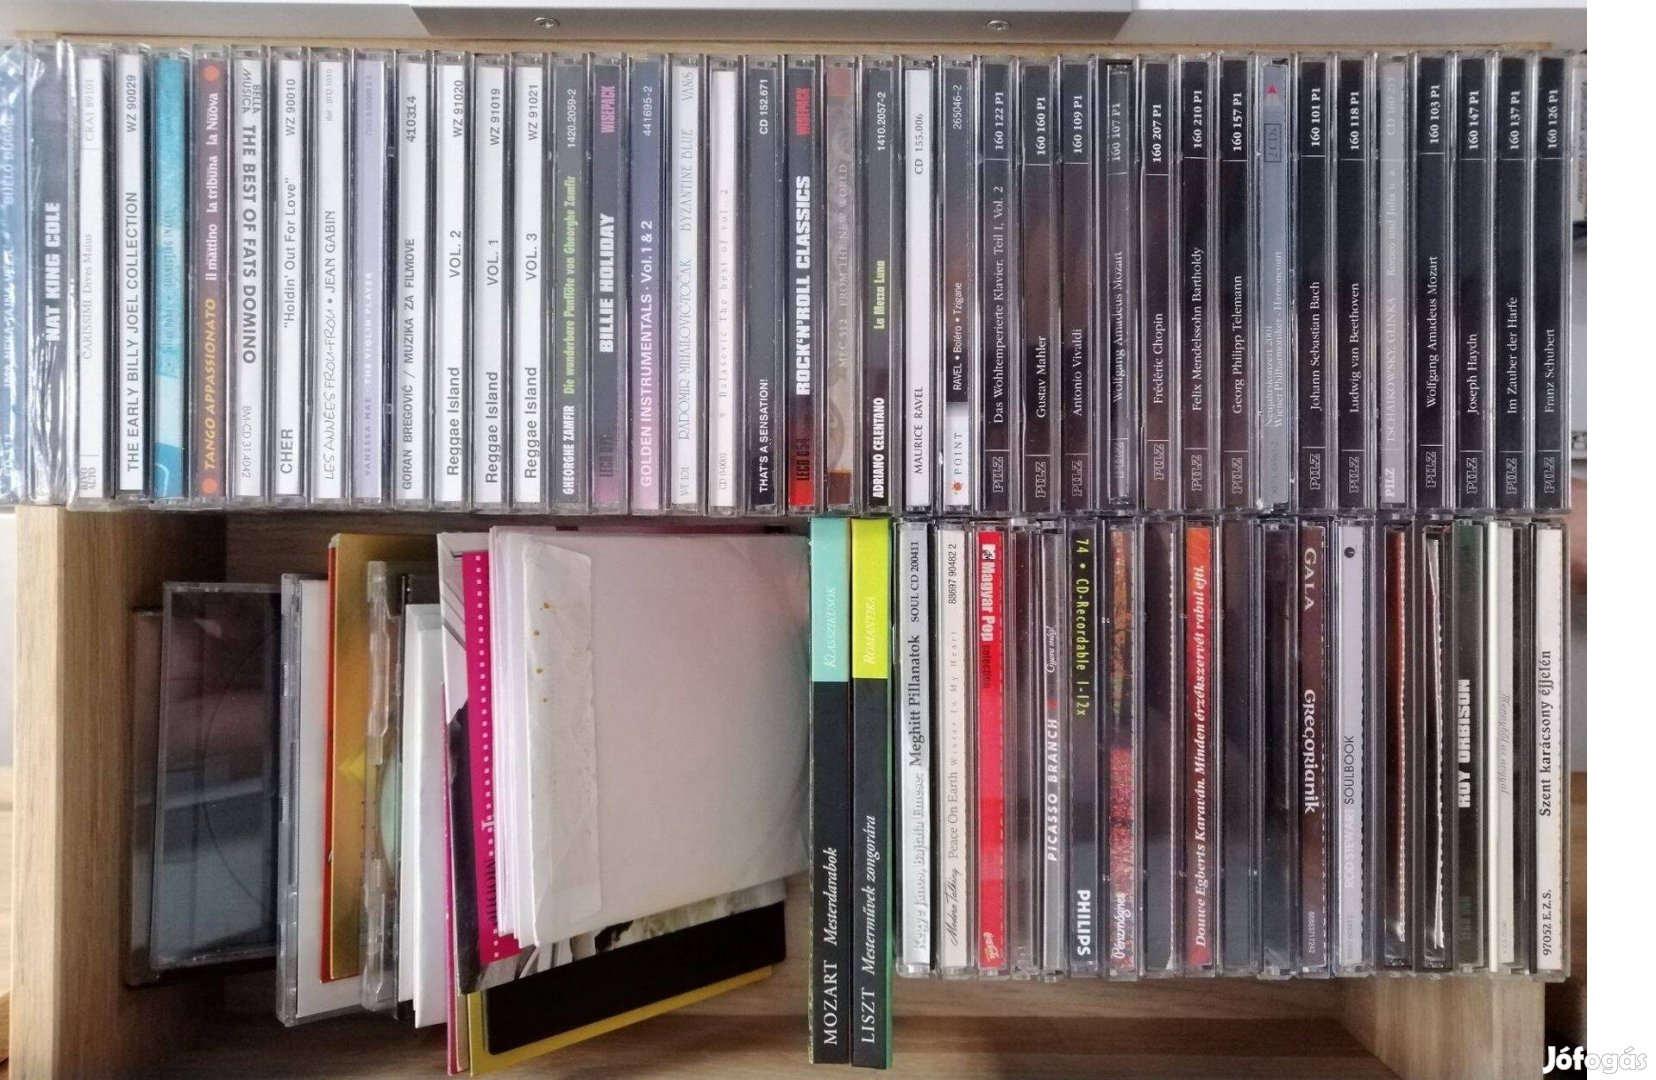 CD gyűjtemény felszámolás,sok bontatlan is! tiszta helyen tárolt szet!